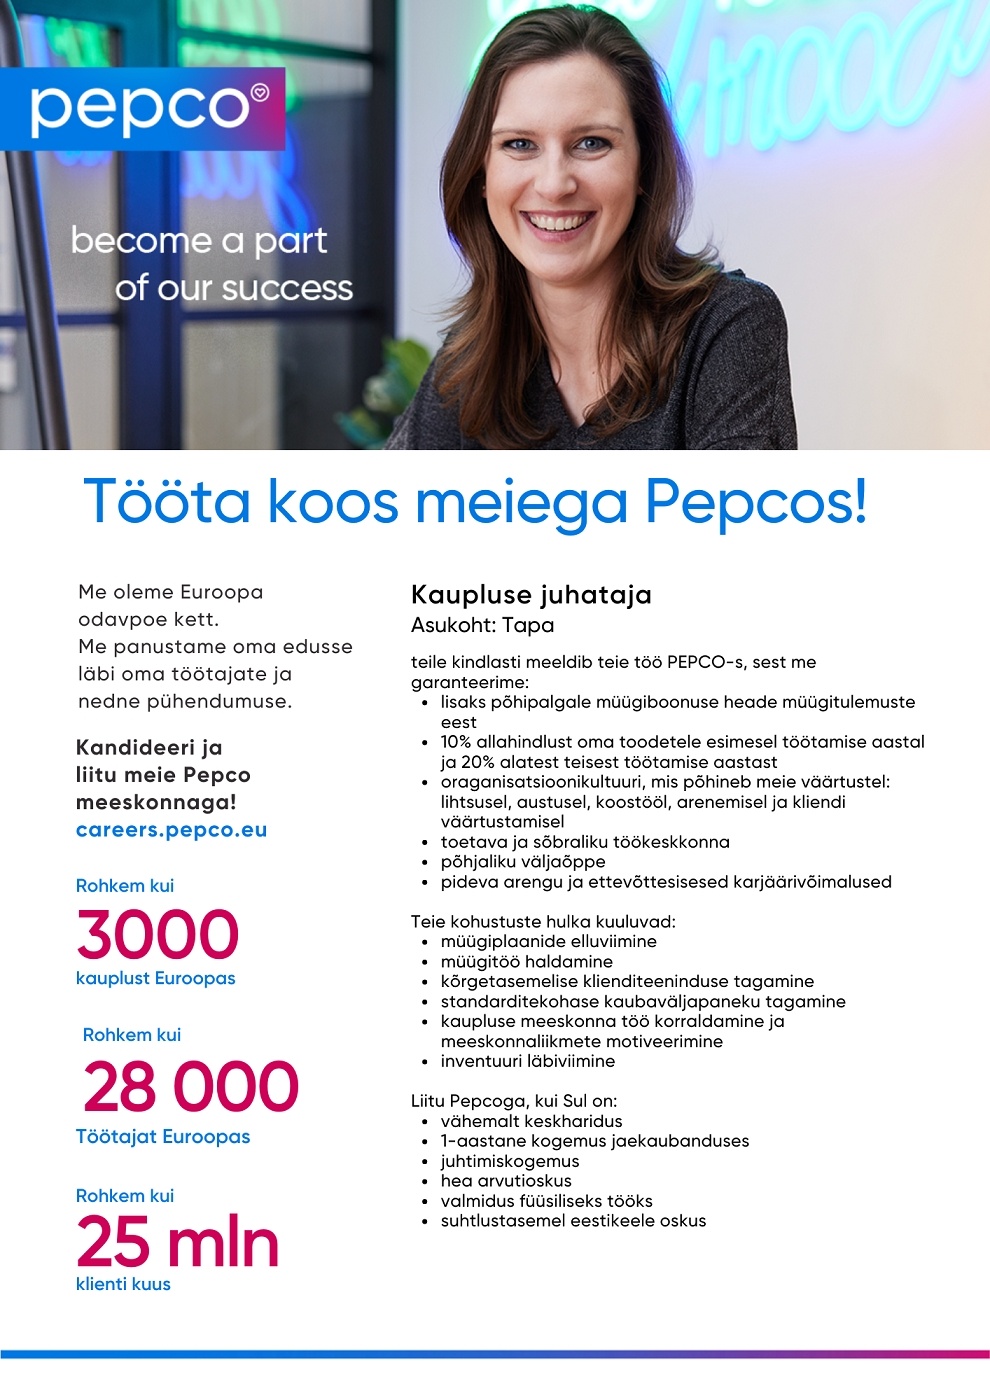 Pepco Estonia OÜ Kaupluse juhataja Tapa PEPCO kaupluses (Uus avatav kauplus)